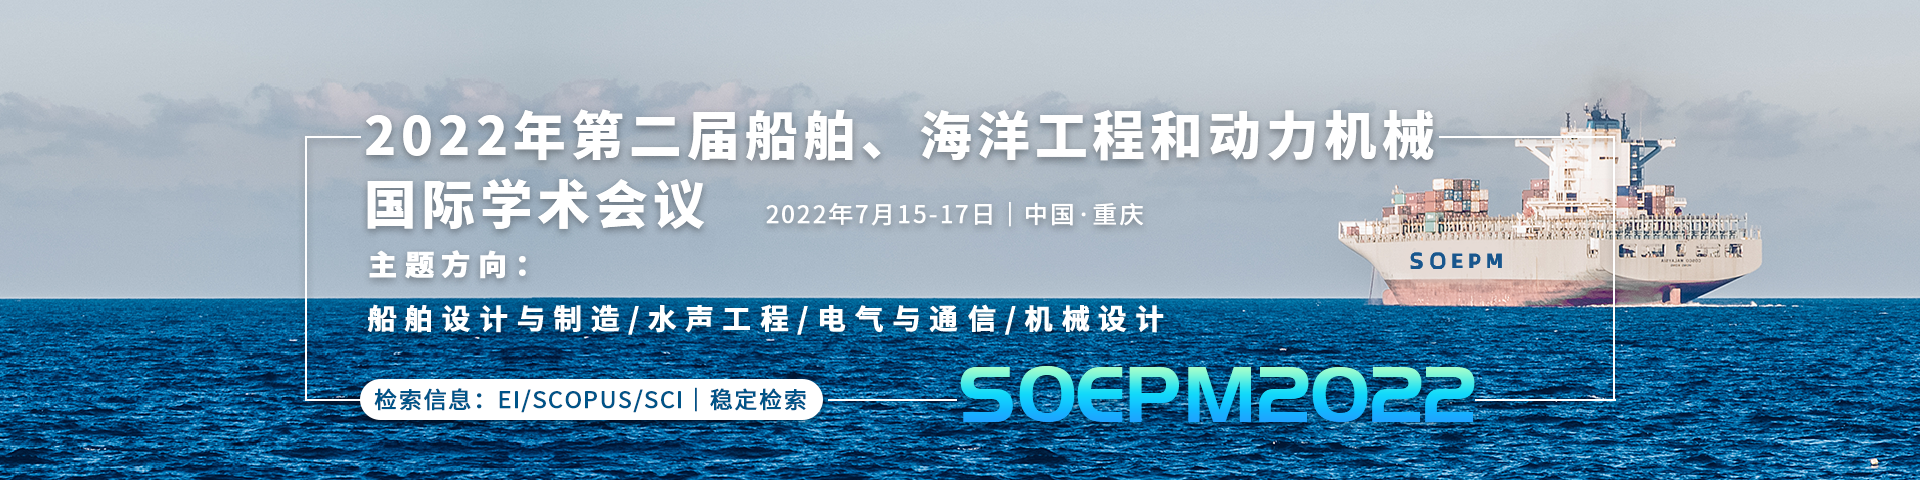 7月15-17日重庆SOEPM2022会议艾思banner-何雪仪-修改20220224.png